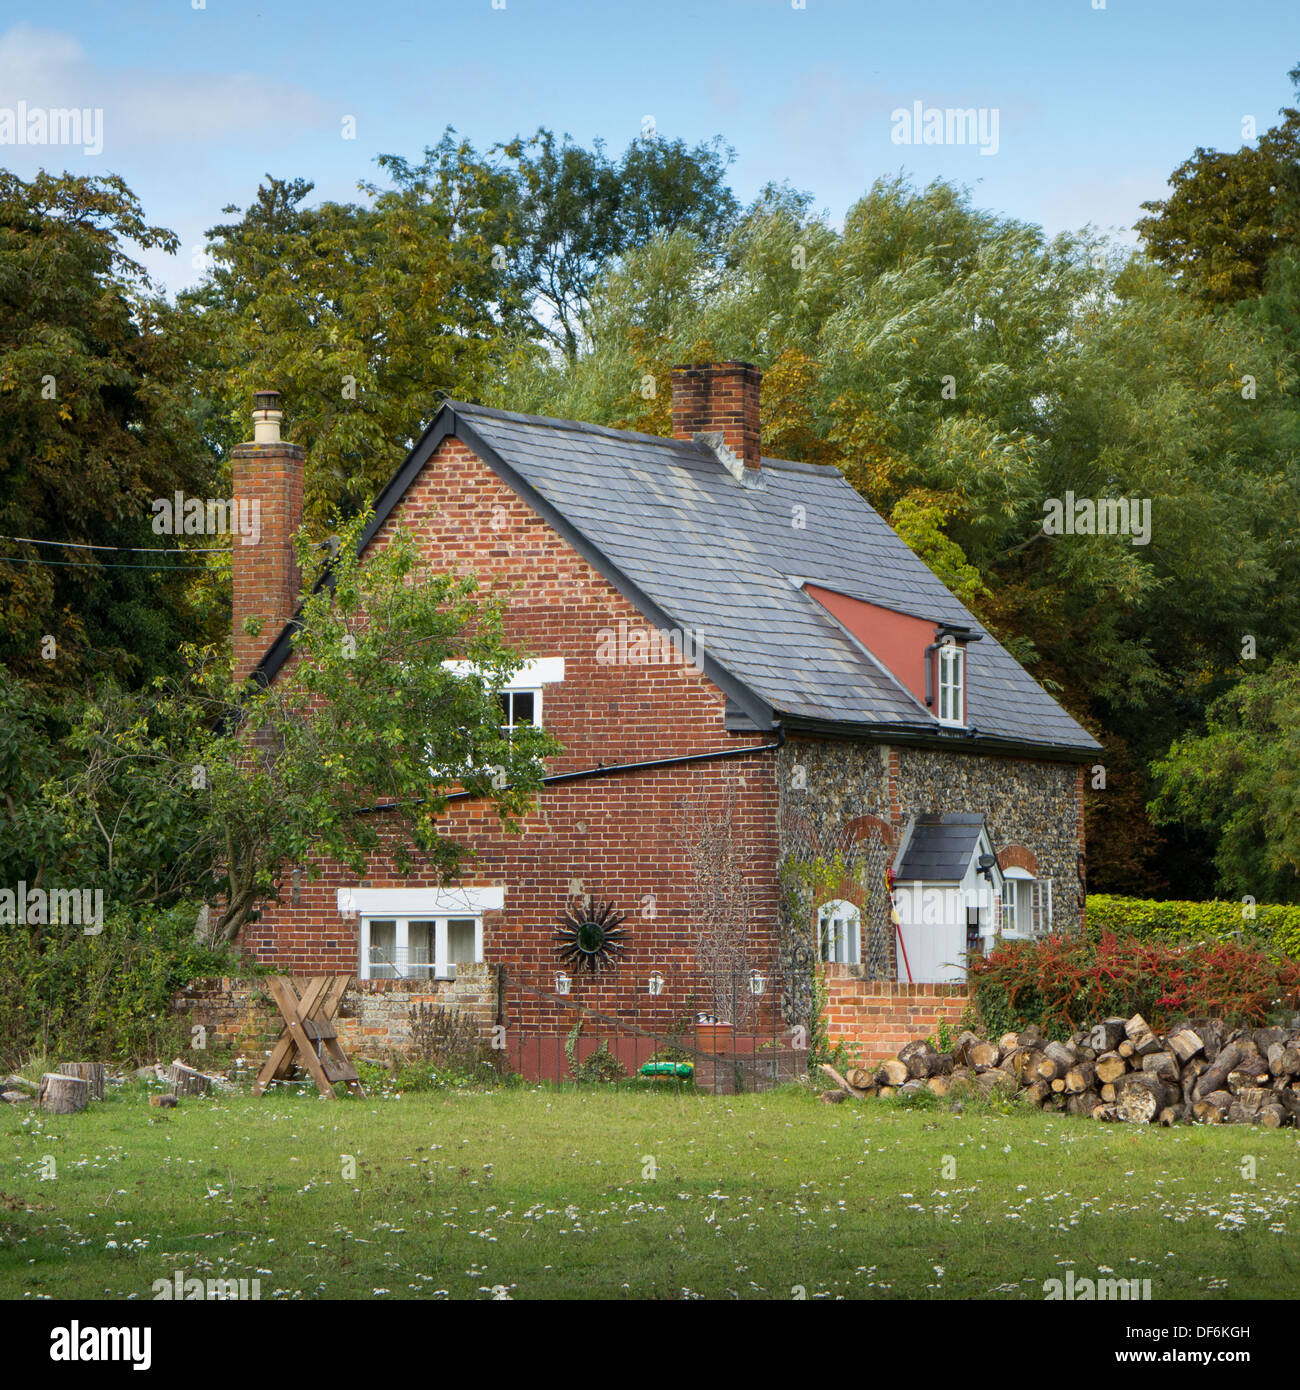 L'extérieur d'un petit cottage en brique isolé dans un champ entouré d'arbres dans le Suffolk, Angleterre. Banque D'Images